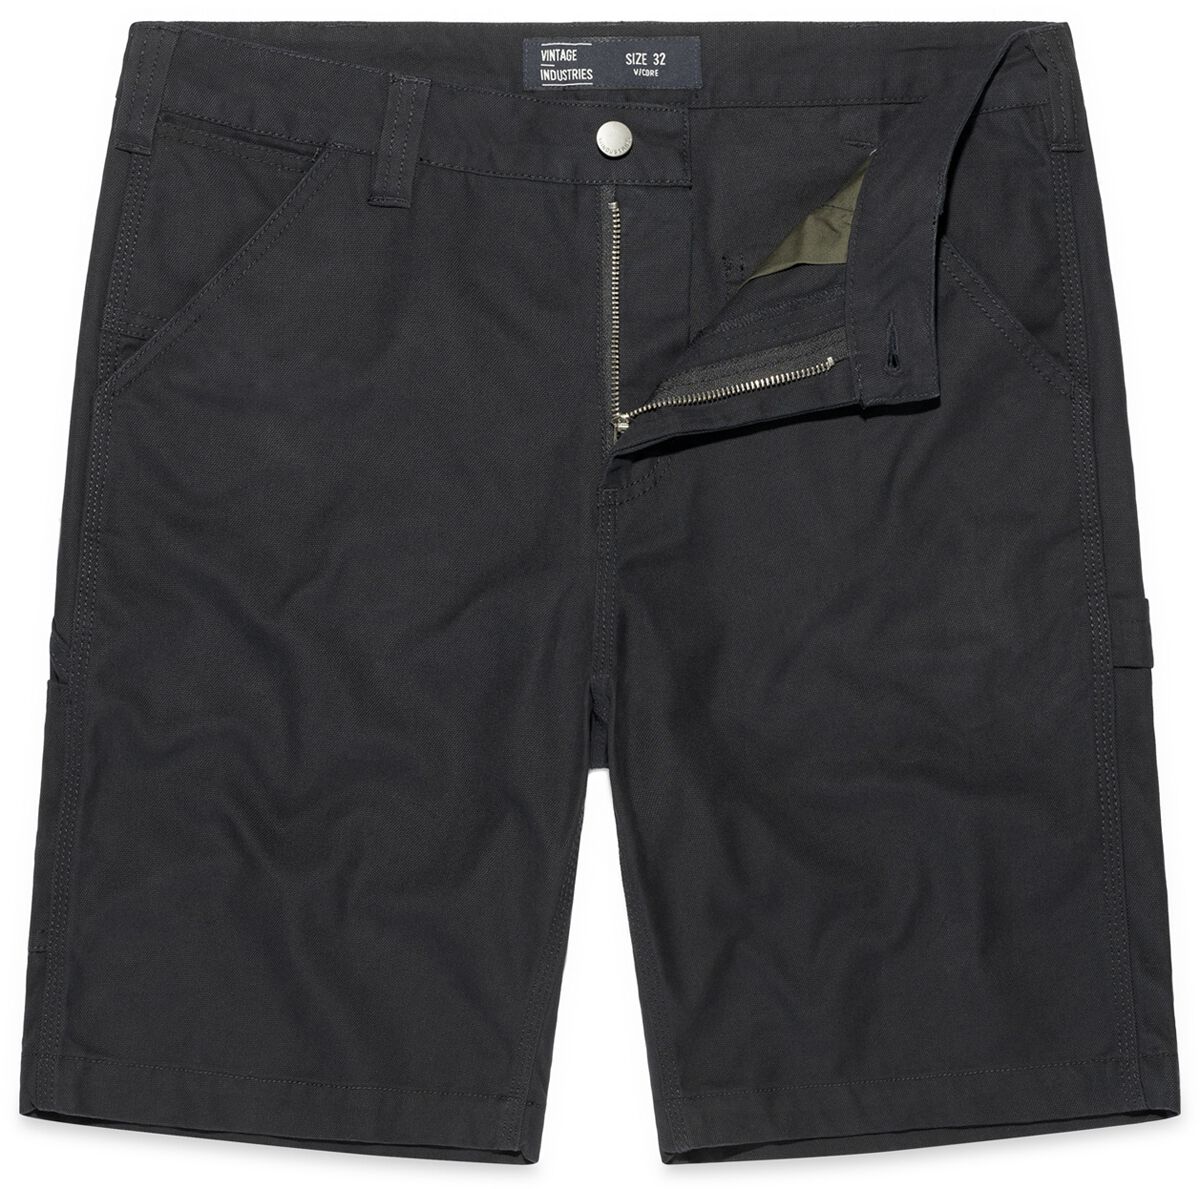 Vintage Industries Short - Dayton Shorts - 32 bis 38 - für Männer - Größe 32 - schwarz